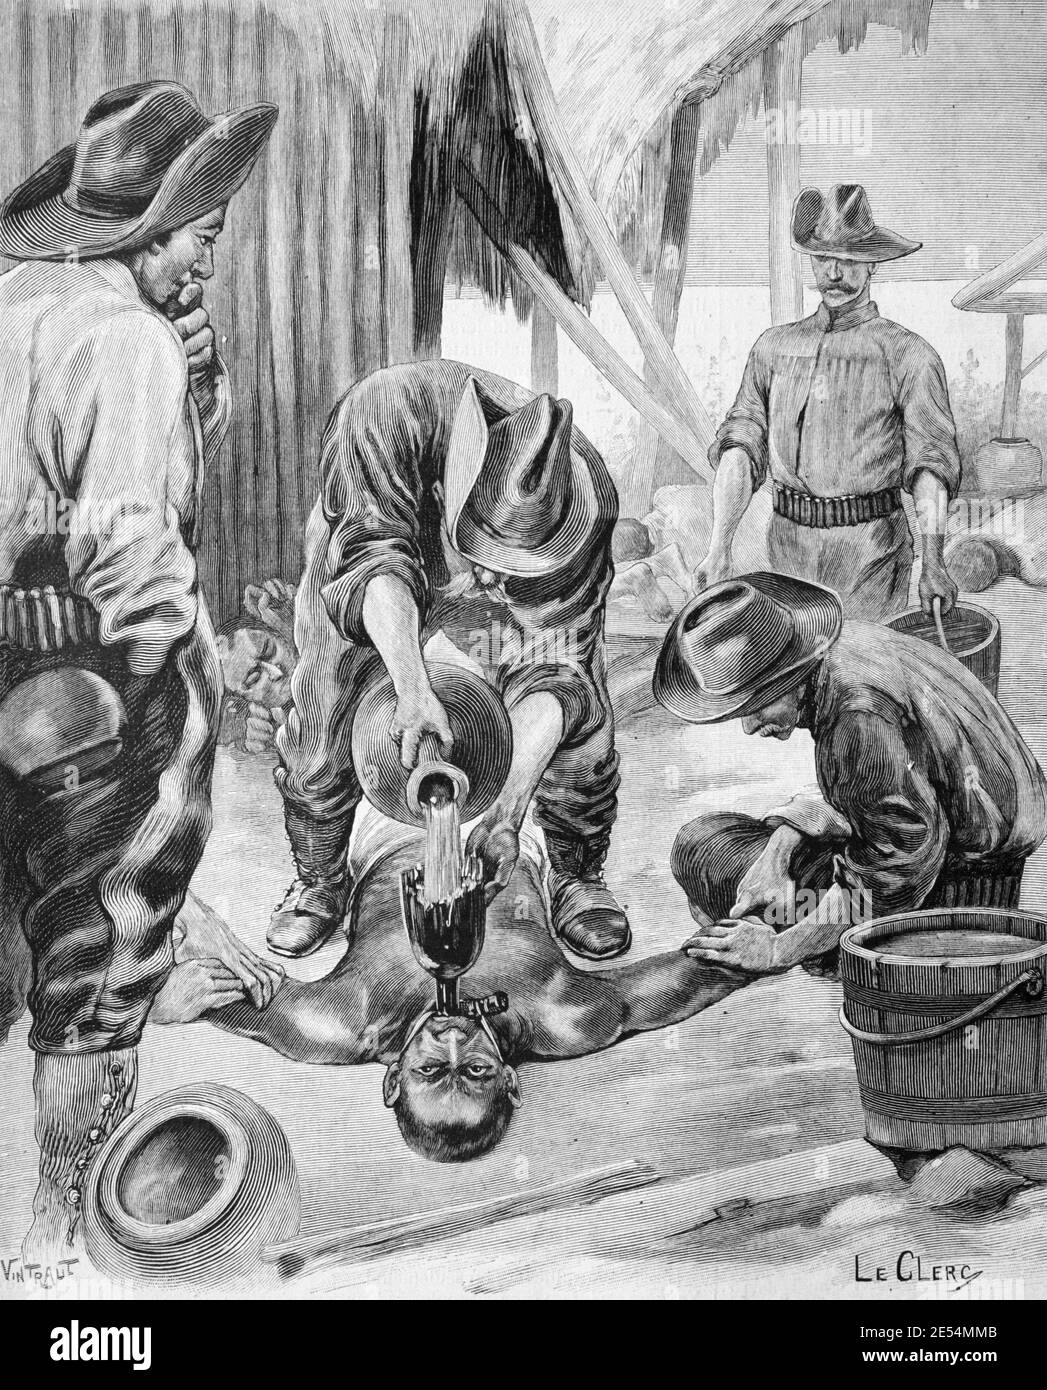 tortura-del-agua-en-las-filipinas-usado-contra-filipinos-por-americano-fuerzas-durante-la-guerra-filipina-americana-1899-1902-1902-ilustracion-vintage-or-grabado-2e54mmb.jpg